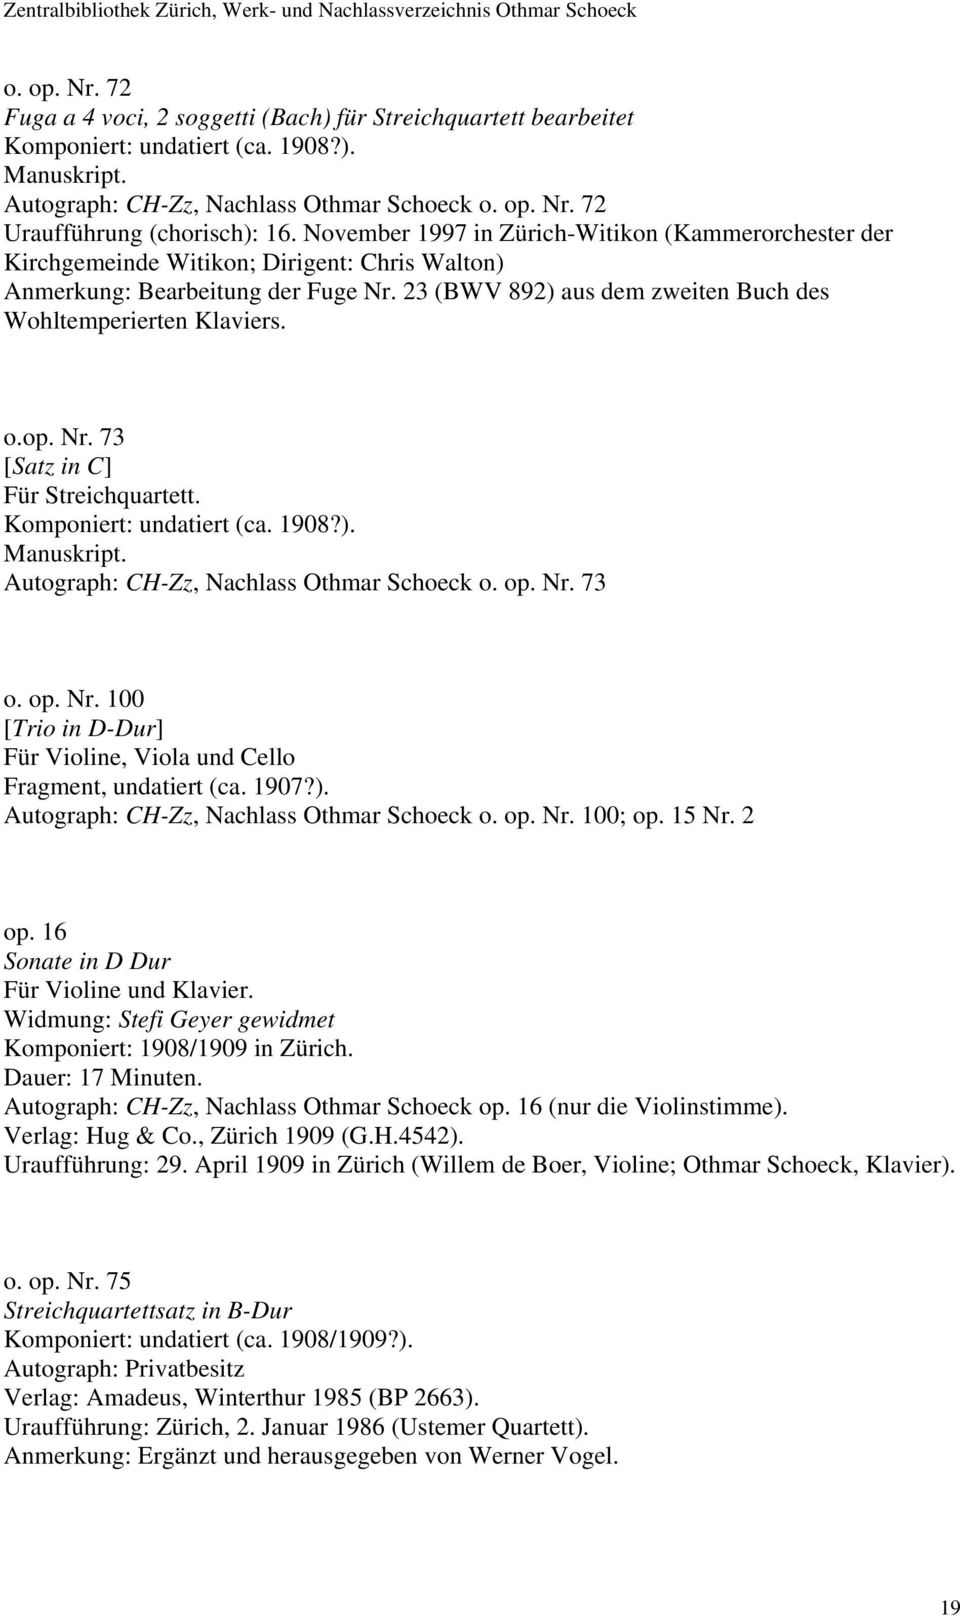 o.op. Nr. 73 [Satz in C] Für Streichquartett. Komponiert: undatiert (ca. 1908?). Autograph: CH-Zz, Nachlass Othmar Schoeck o. op. Nr. 73 o. op. Nr. 100 [Trio in D-Dur] Für Violine, Viola und Cello Fragment, undatiert (ca.